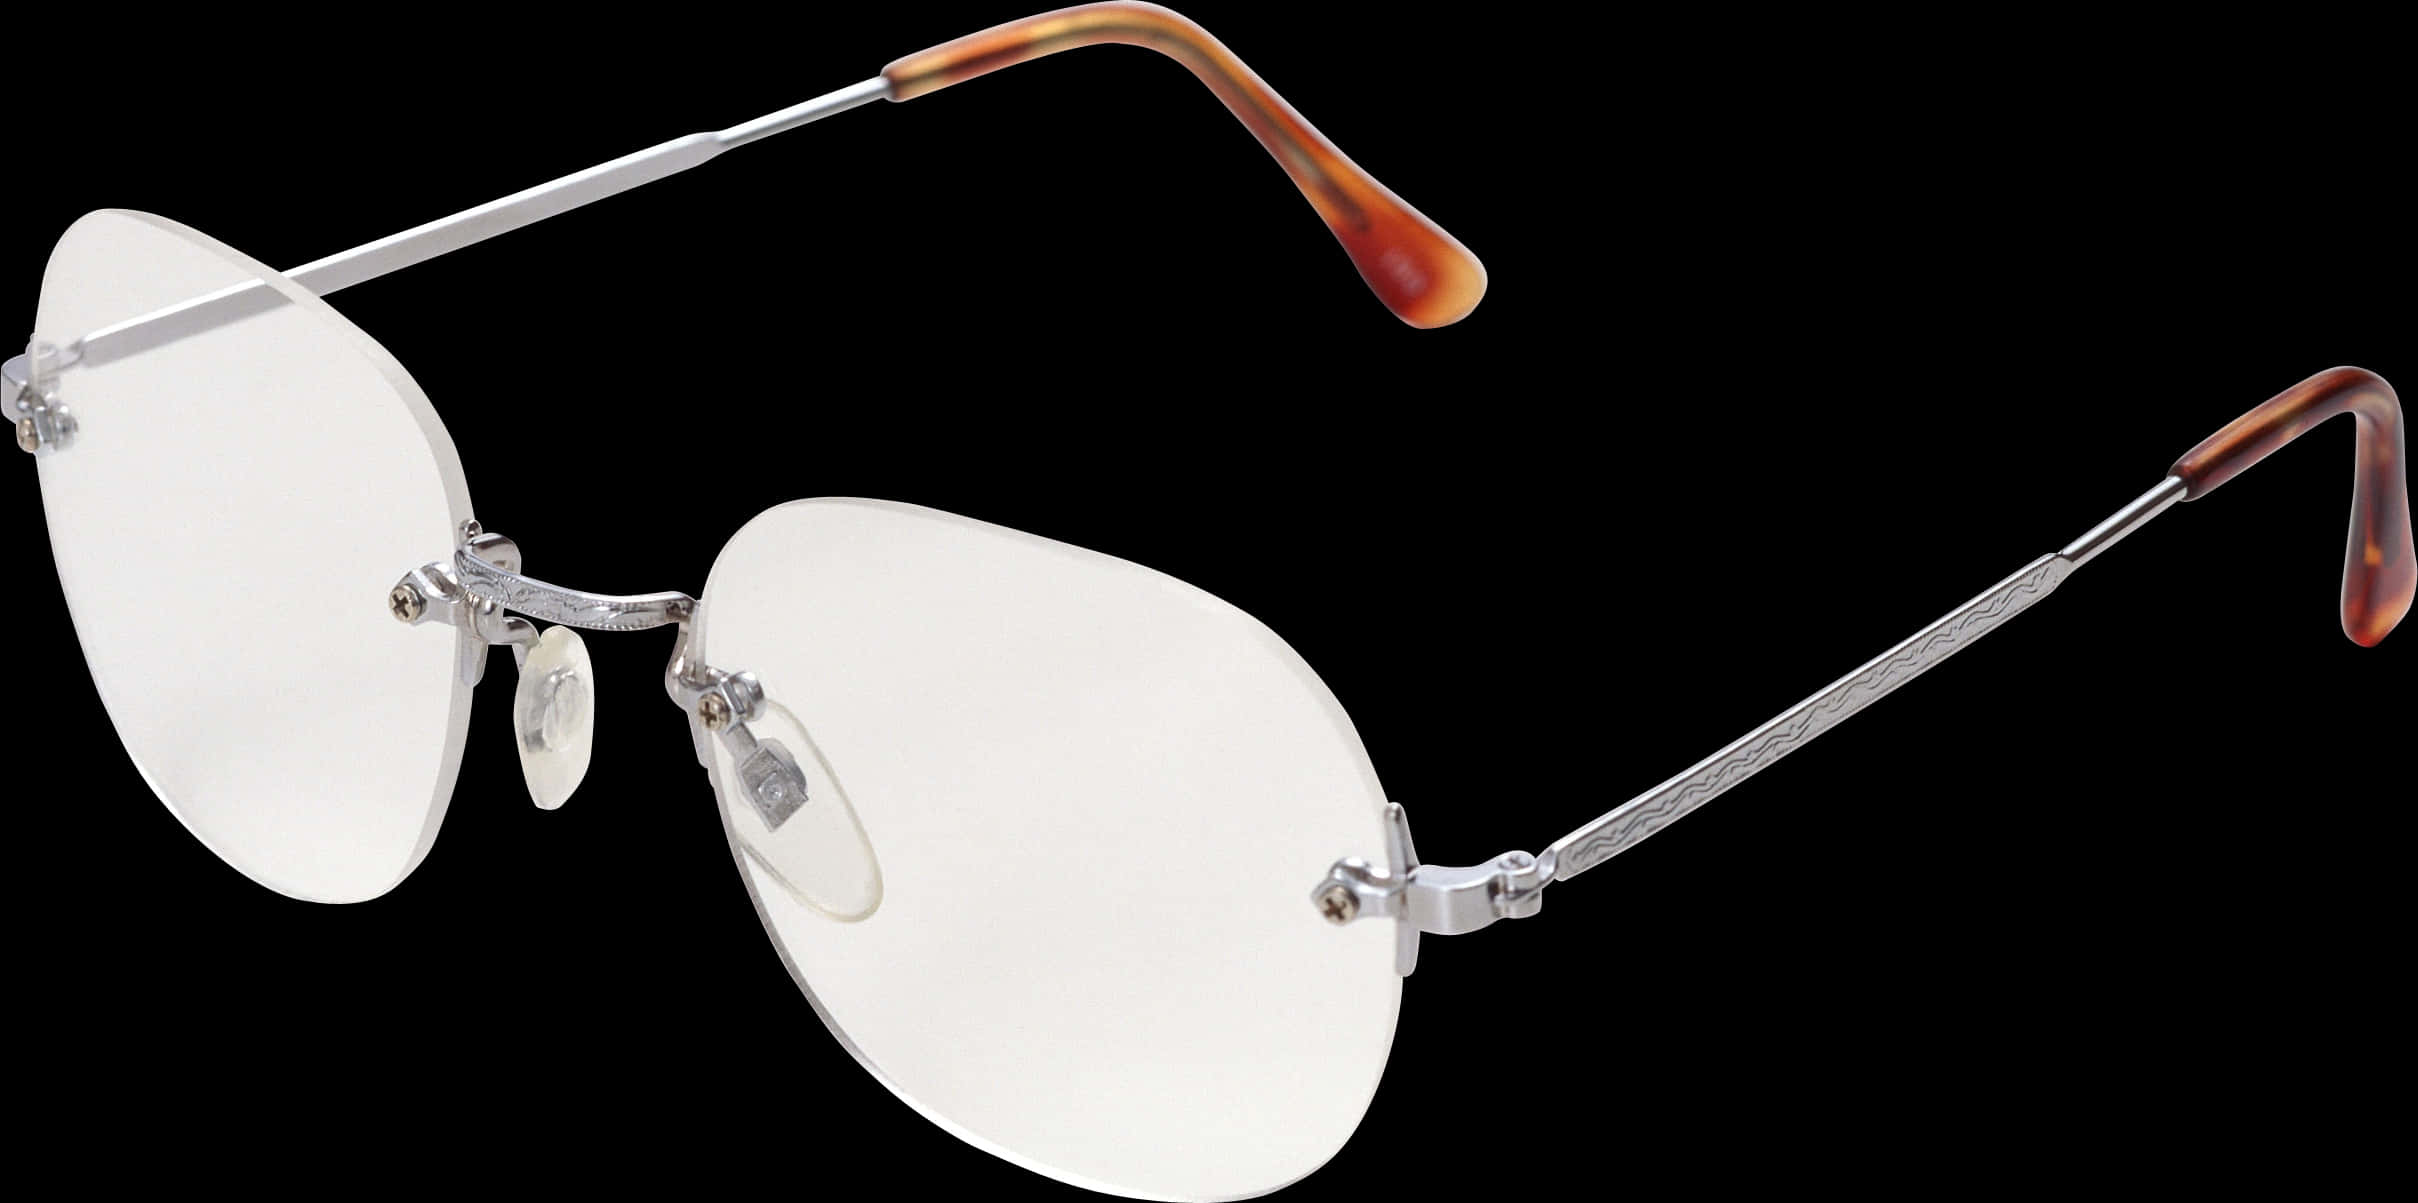 Rimless Eyeglasses Transparent Background PNG image